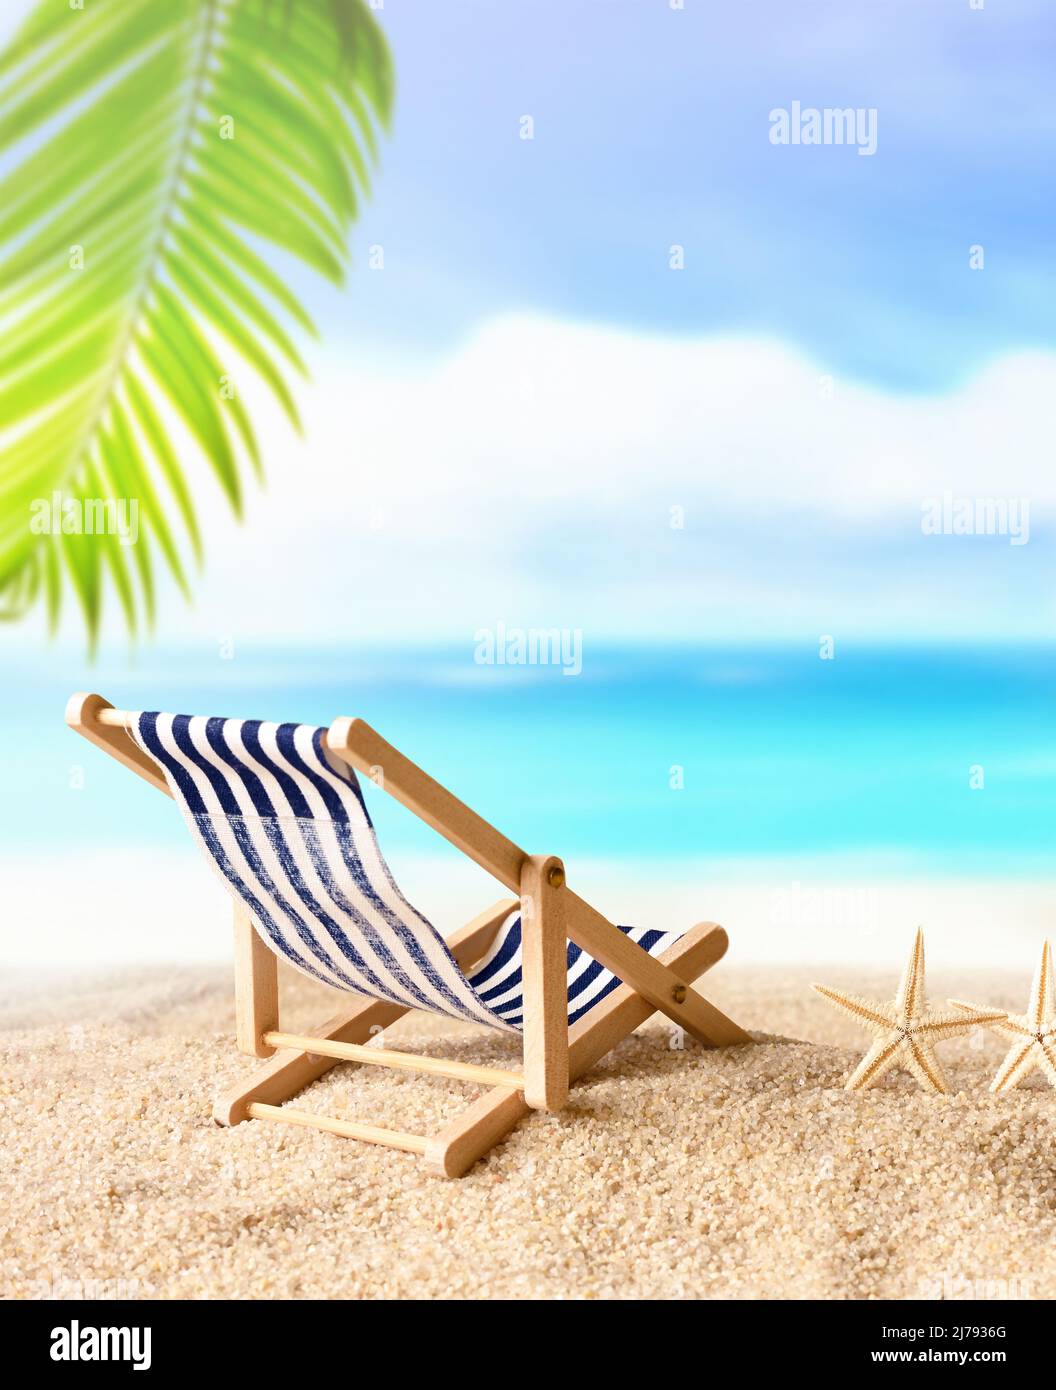 Vacances concept de fond - chaise de plage sous le palmier sur la plage d'été Banque D'Images